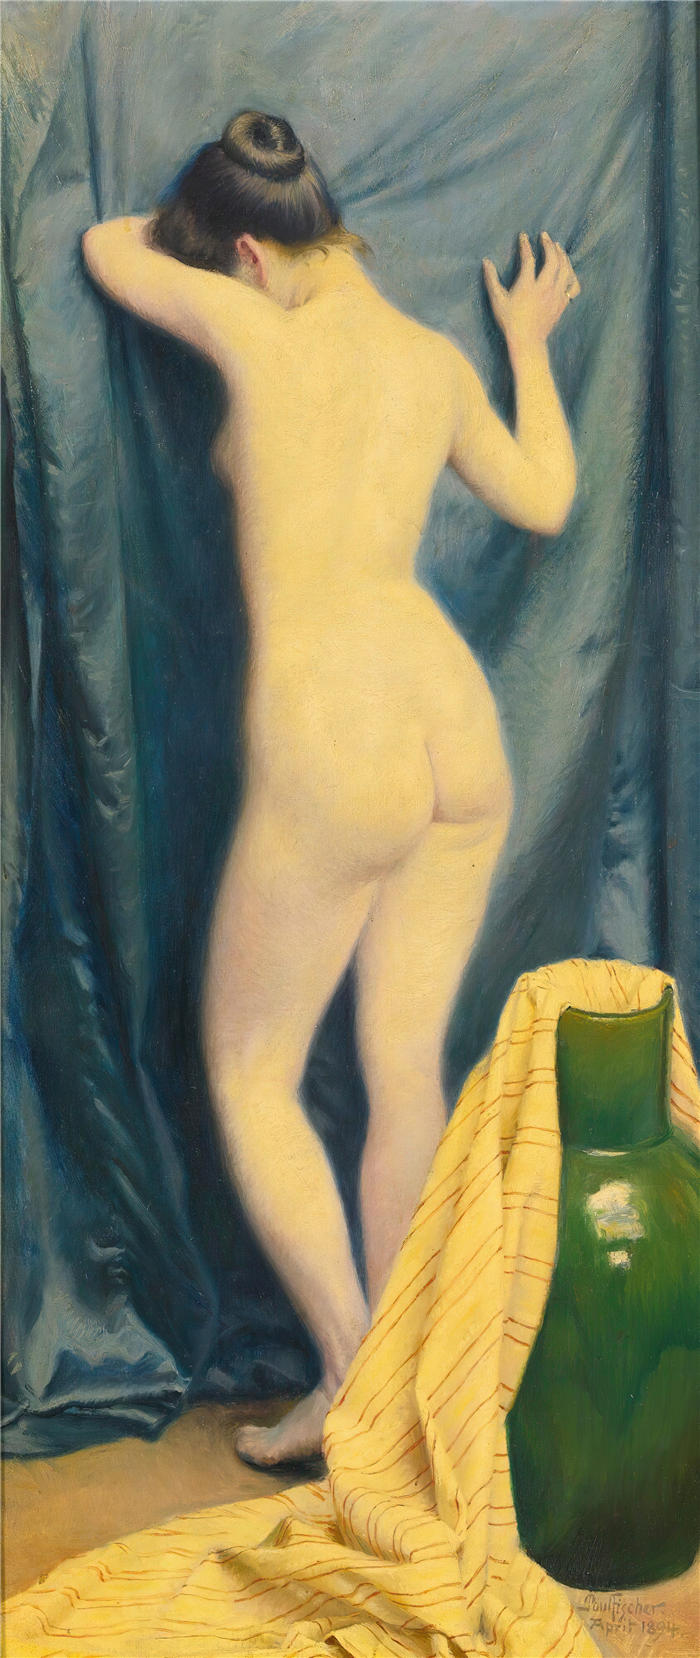 保罗·费舍尔(Paul Fischer，丹麦画家)高清作品-《模型 (1894)》